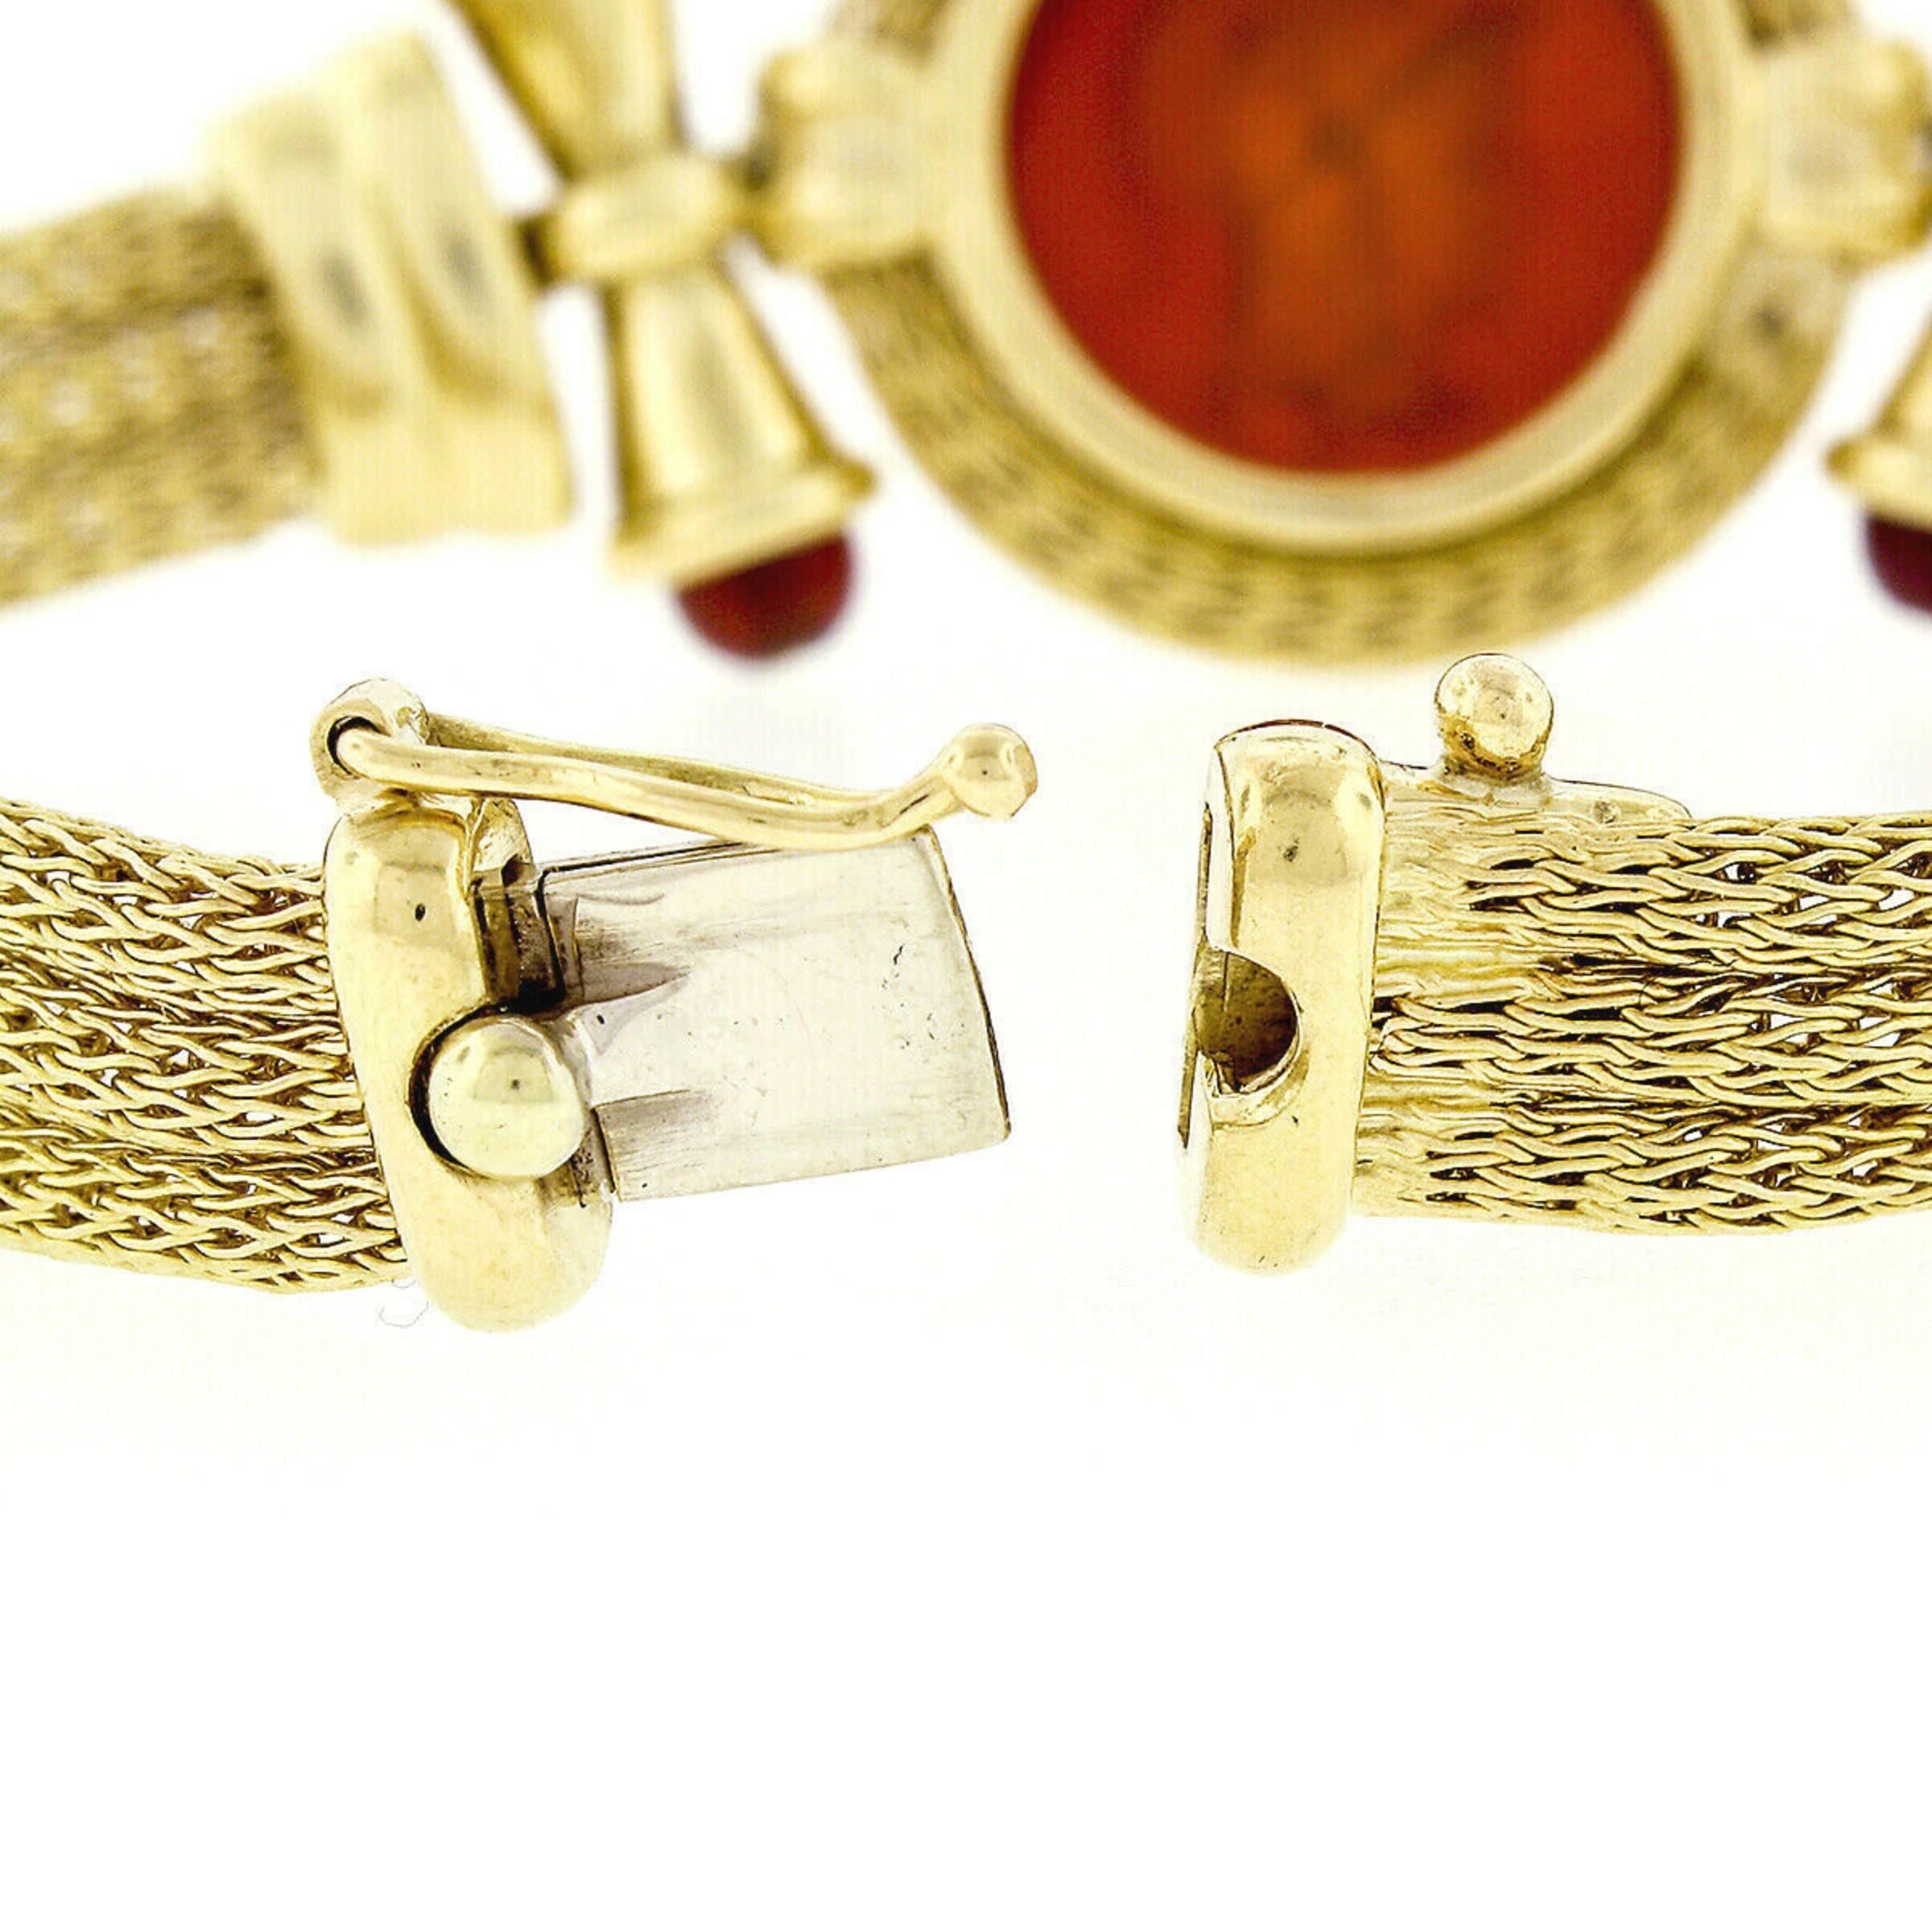 Nuovi Gioielli 18k Gold Mesh Carnelian Intaglio Necklace & Bracelet Suite Set For Sale 4